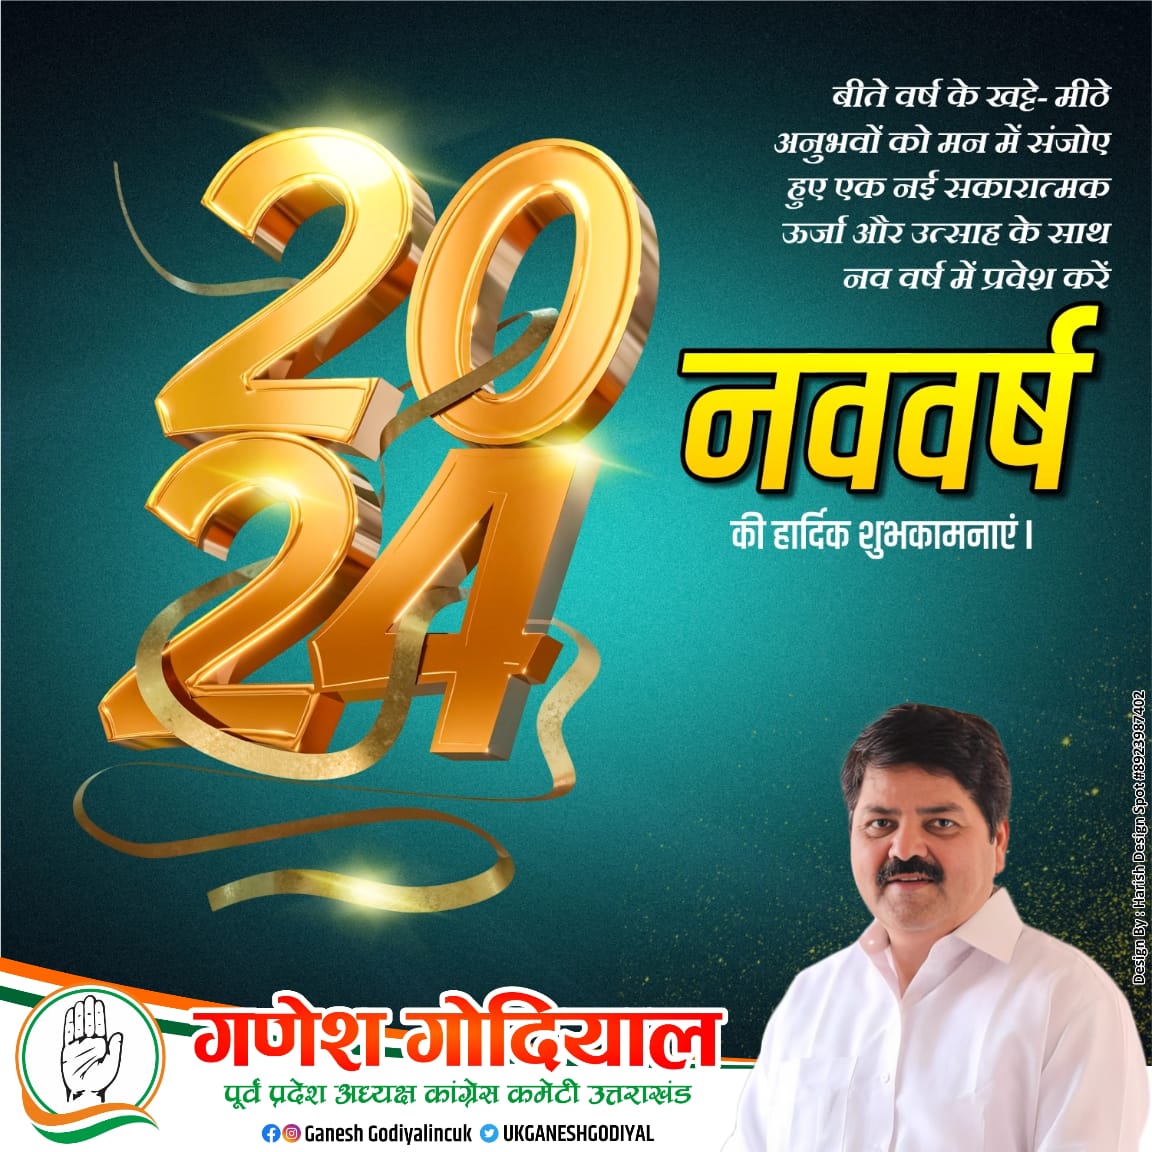 आप सभी को नववर्ष 2024 की हार्दिक बधाई एवं अनंत शुभकामनाएं! 

श्री बद्री-केदार जी से आप सभी के सफल, सुखद एवं मंगलमय जीवन की कामना करता हूँ।

#HappyNewYears2024